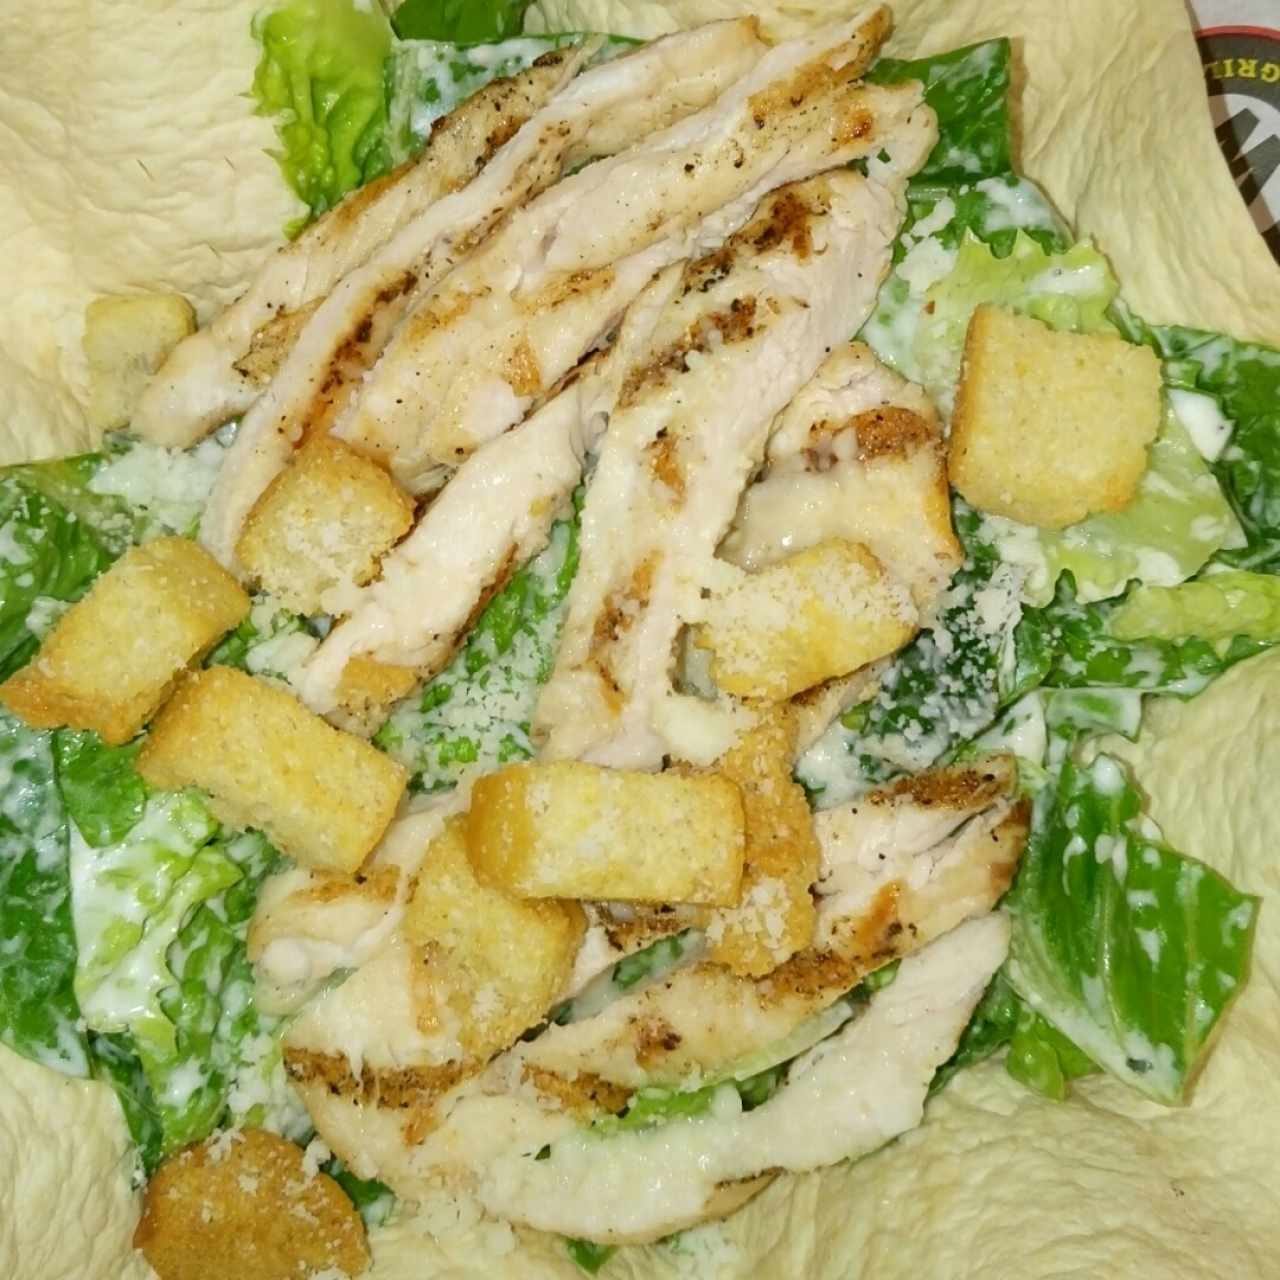 Chicken cesar salad